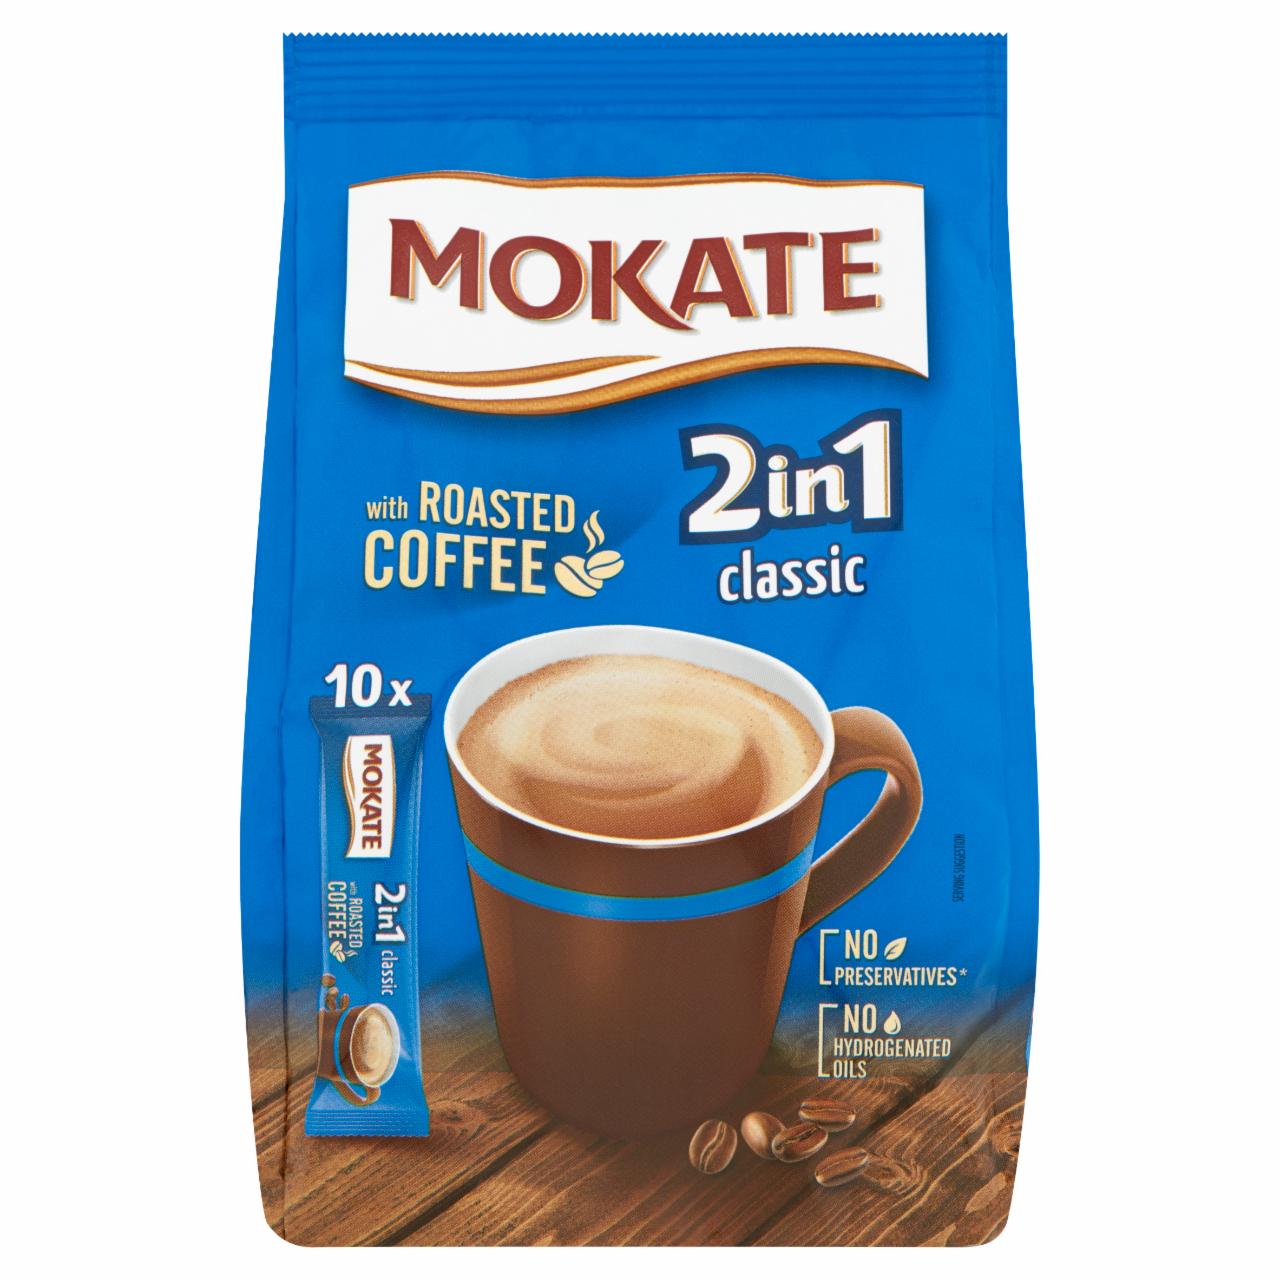 Képek - Mokate 2in1 Classic azonnal oldódó kávéspecialitás 10 db 140 g